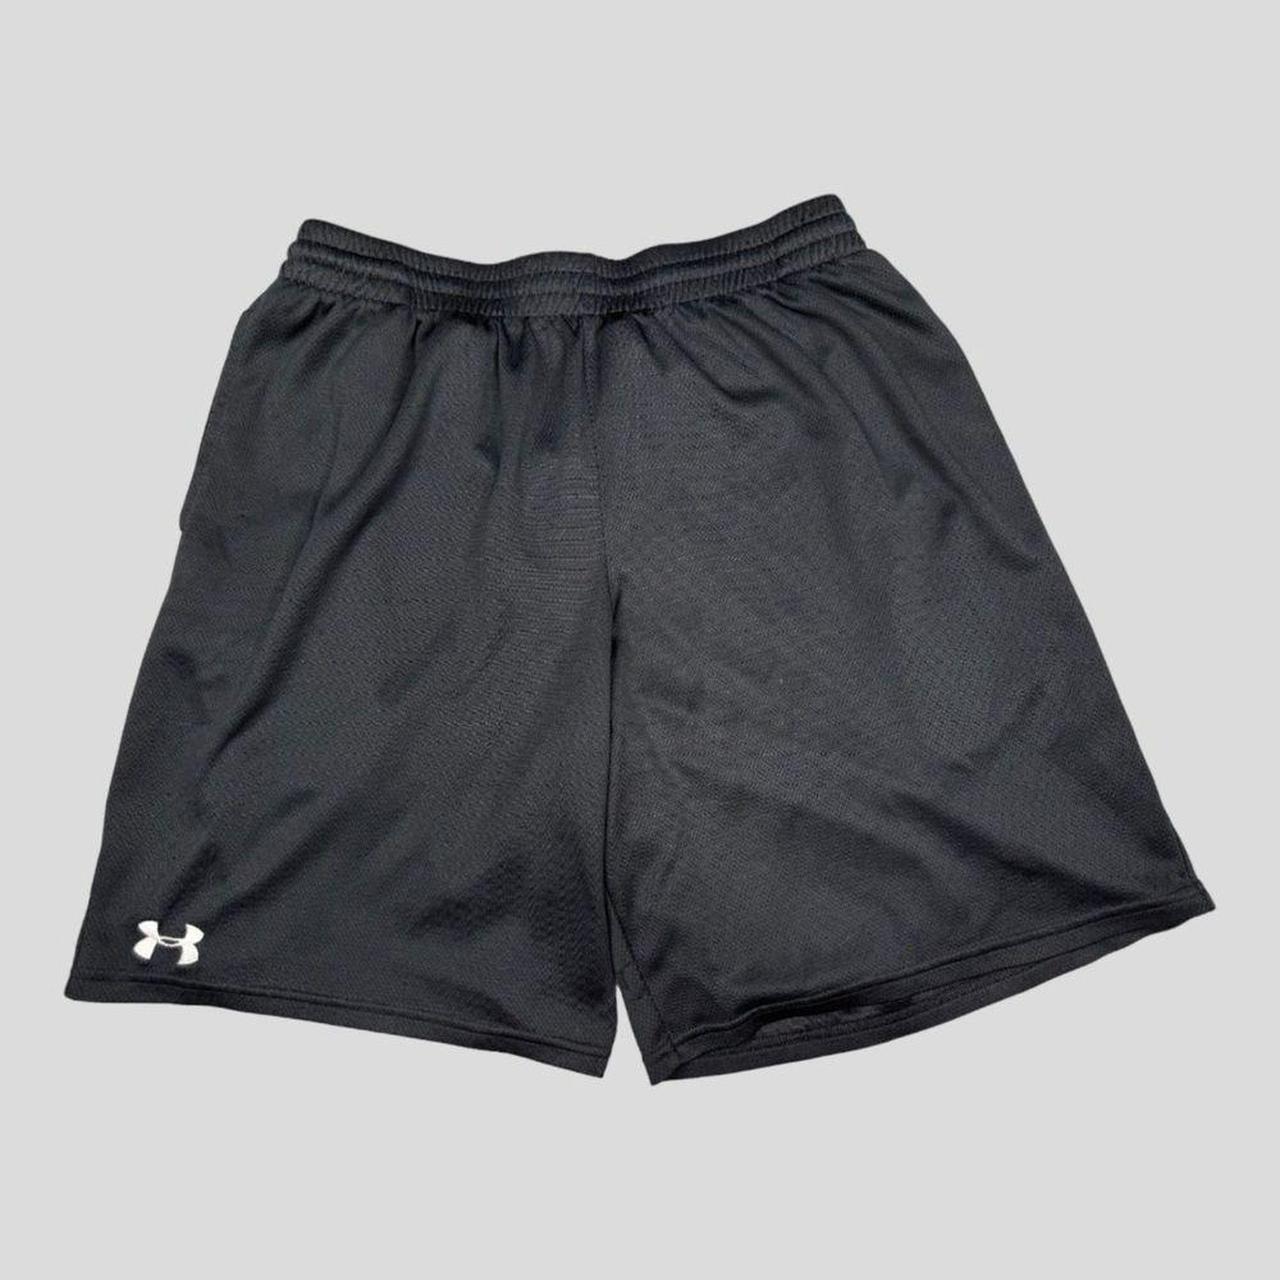 Men's Under Armor Shorts * Excellent Condition! - Depop